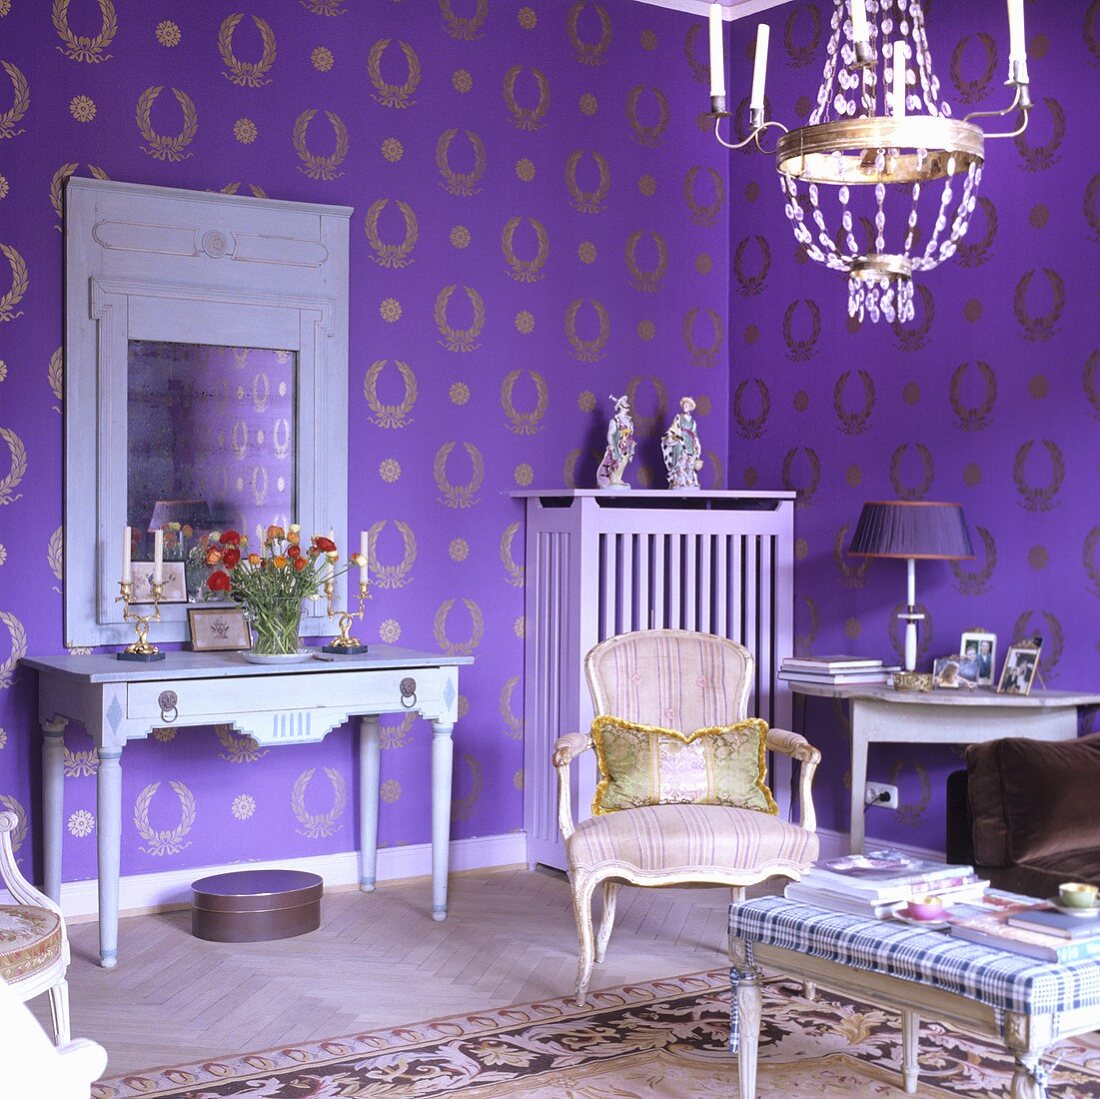 Salon mit Rokokostuhl und ländlicher Wandtisch mit Spiegel vor lila Tapete mit goldenem Ornamentmuster